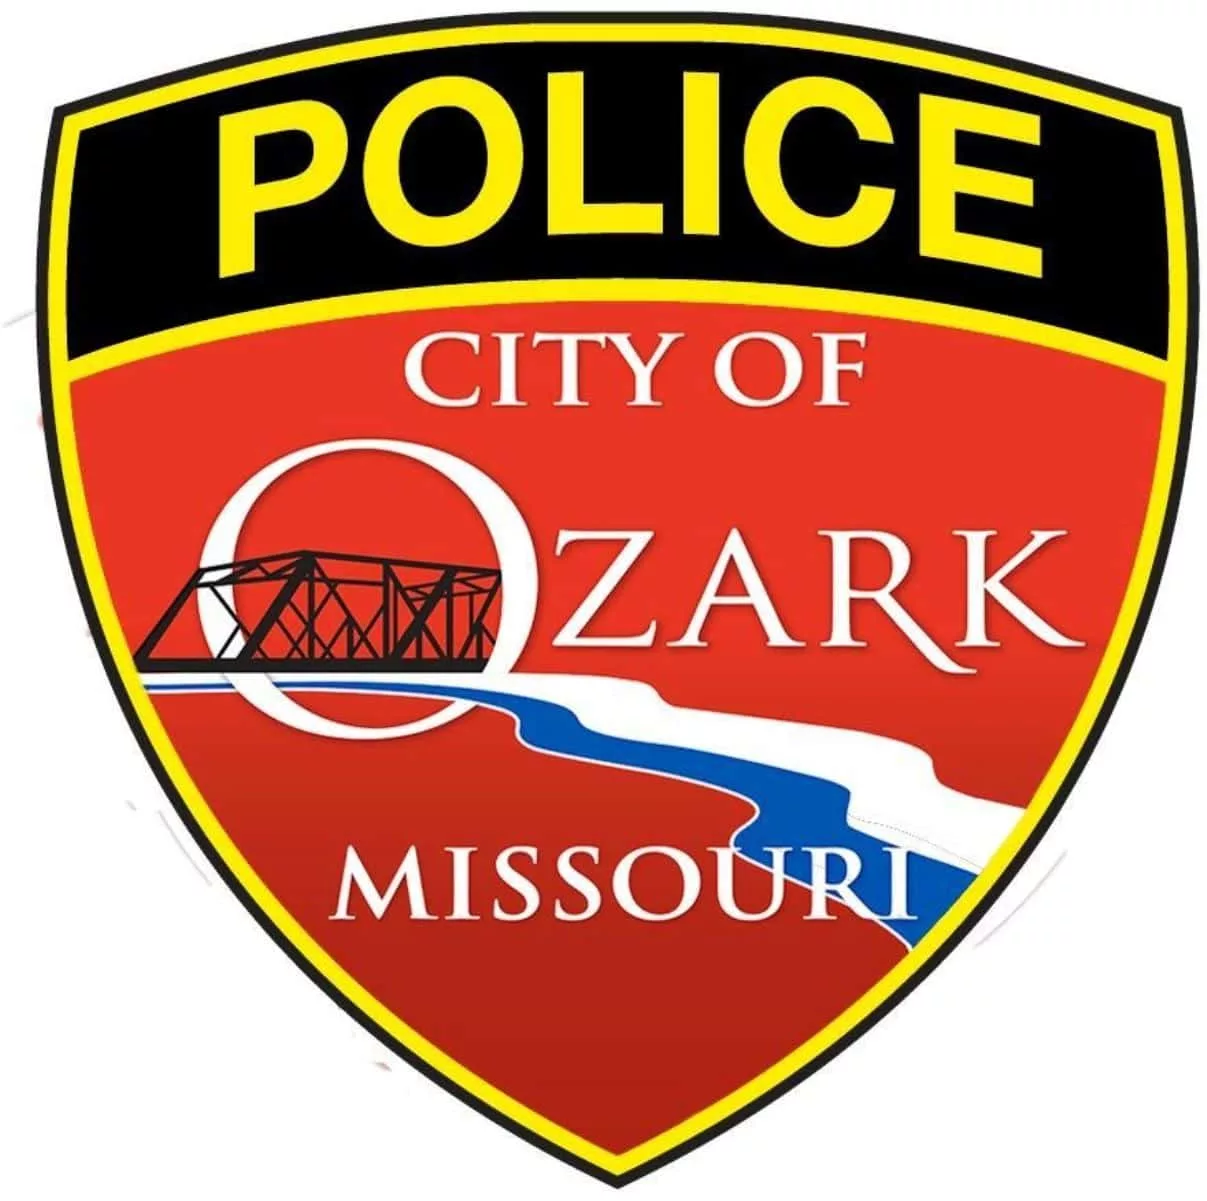 ozark-police-logo-1-24-19-jpg-4